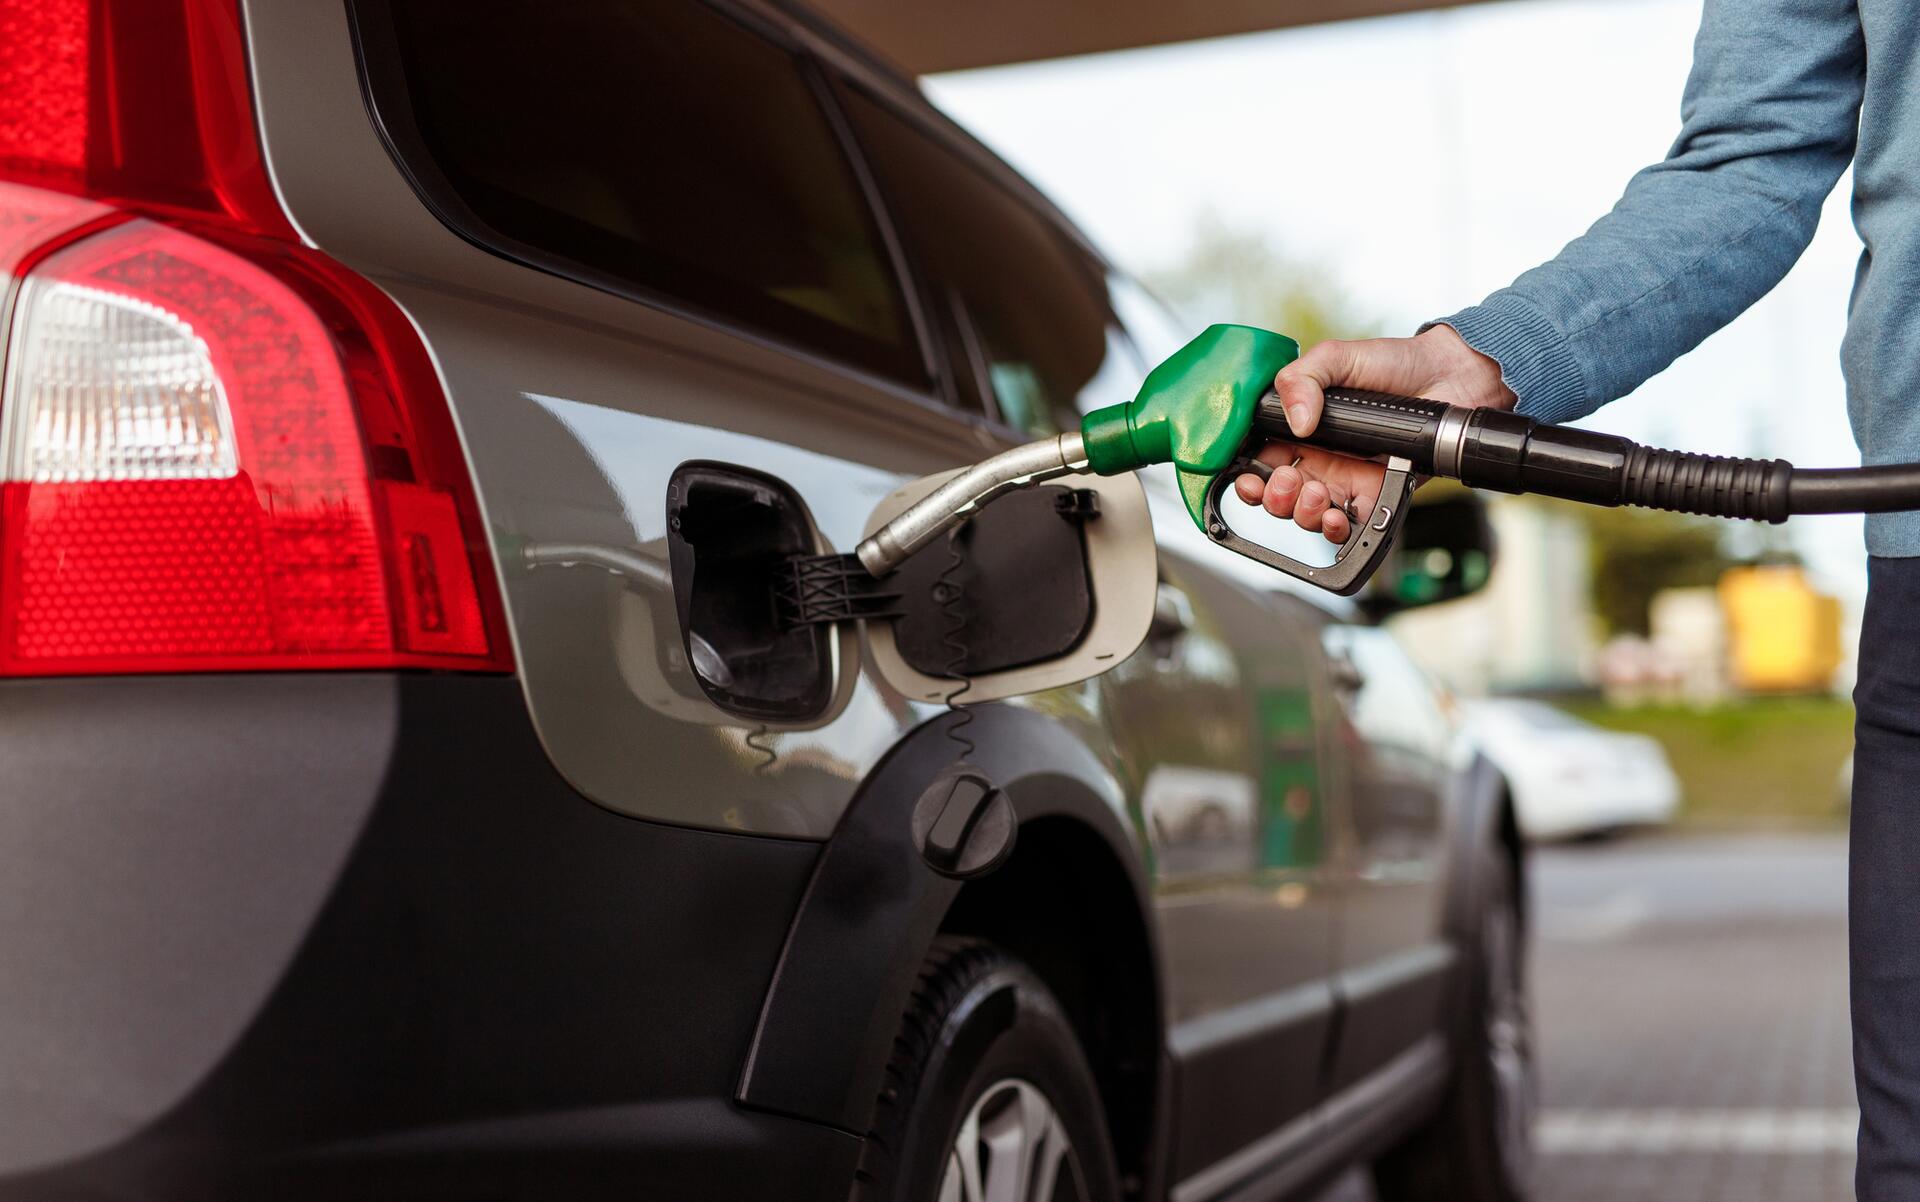 Natankování špatného paliva: Co si počíst?